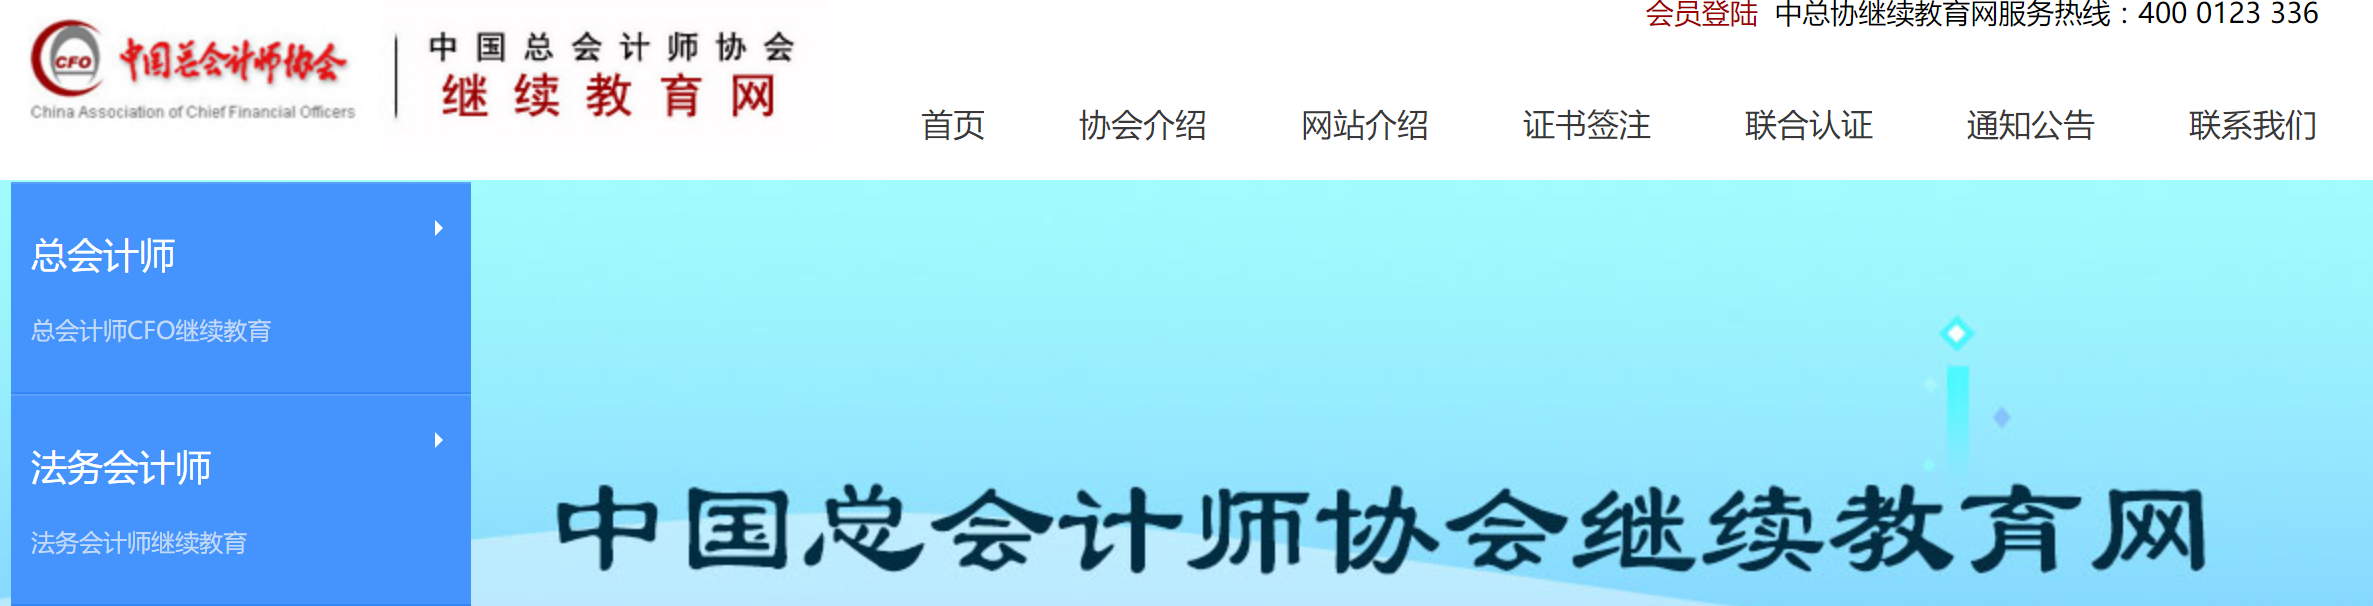 中国总会计师协会继续教育网